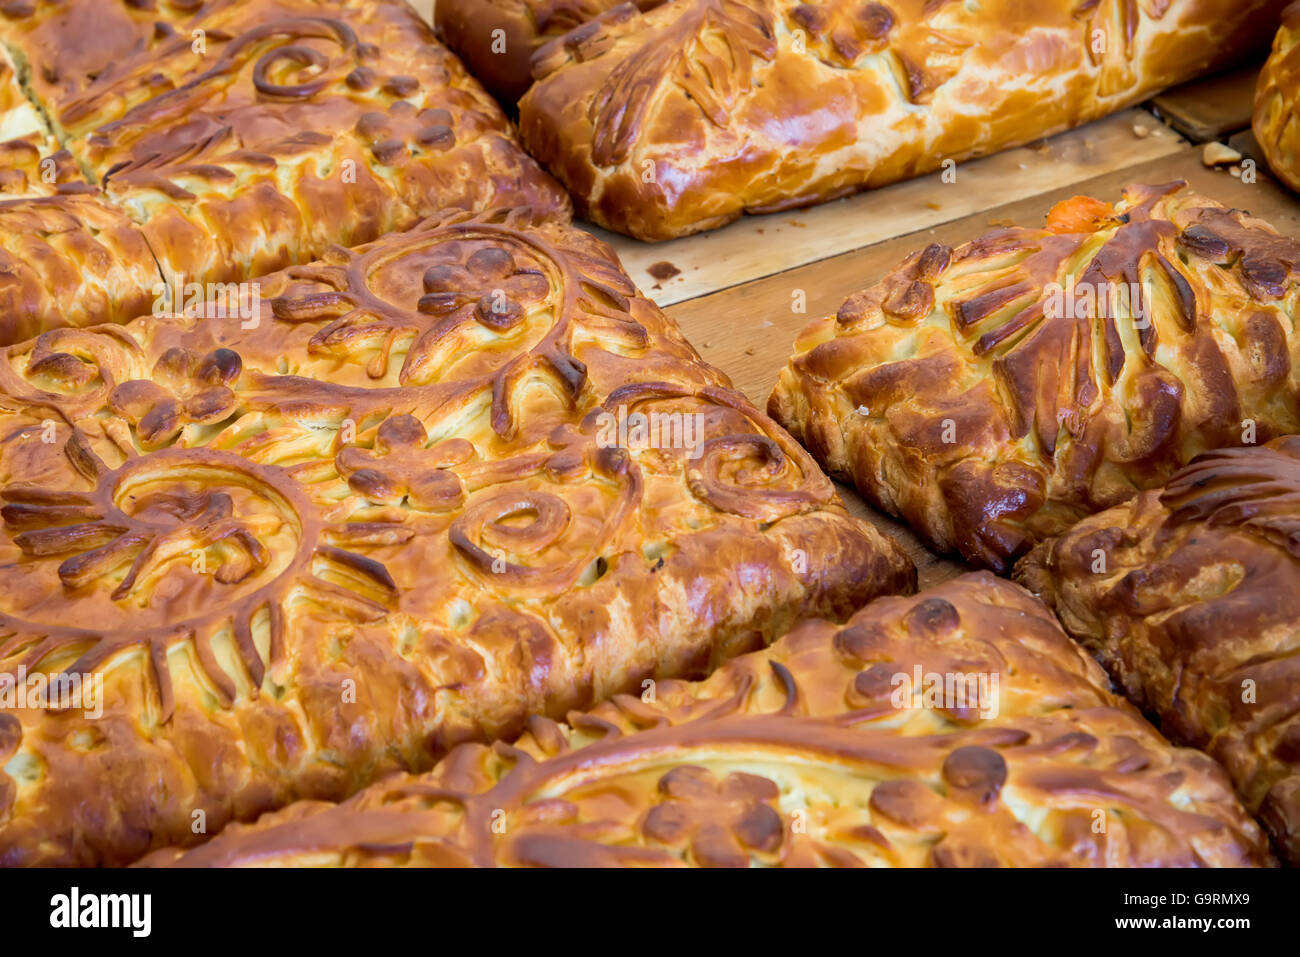 Kulebyaka cabbage pie close up. Russian cuisine Stock Photo